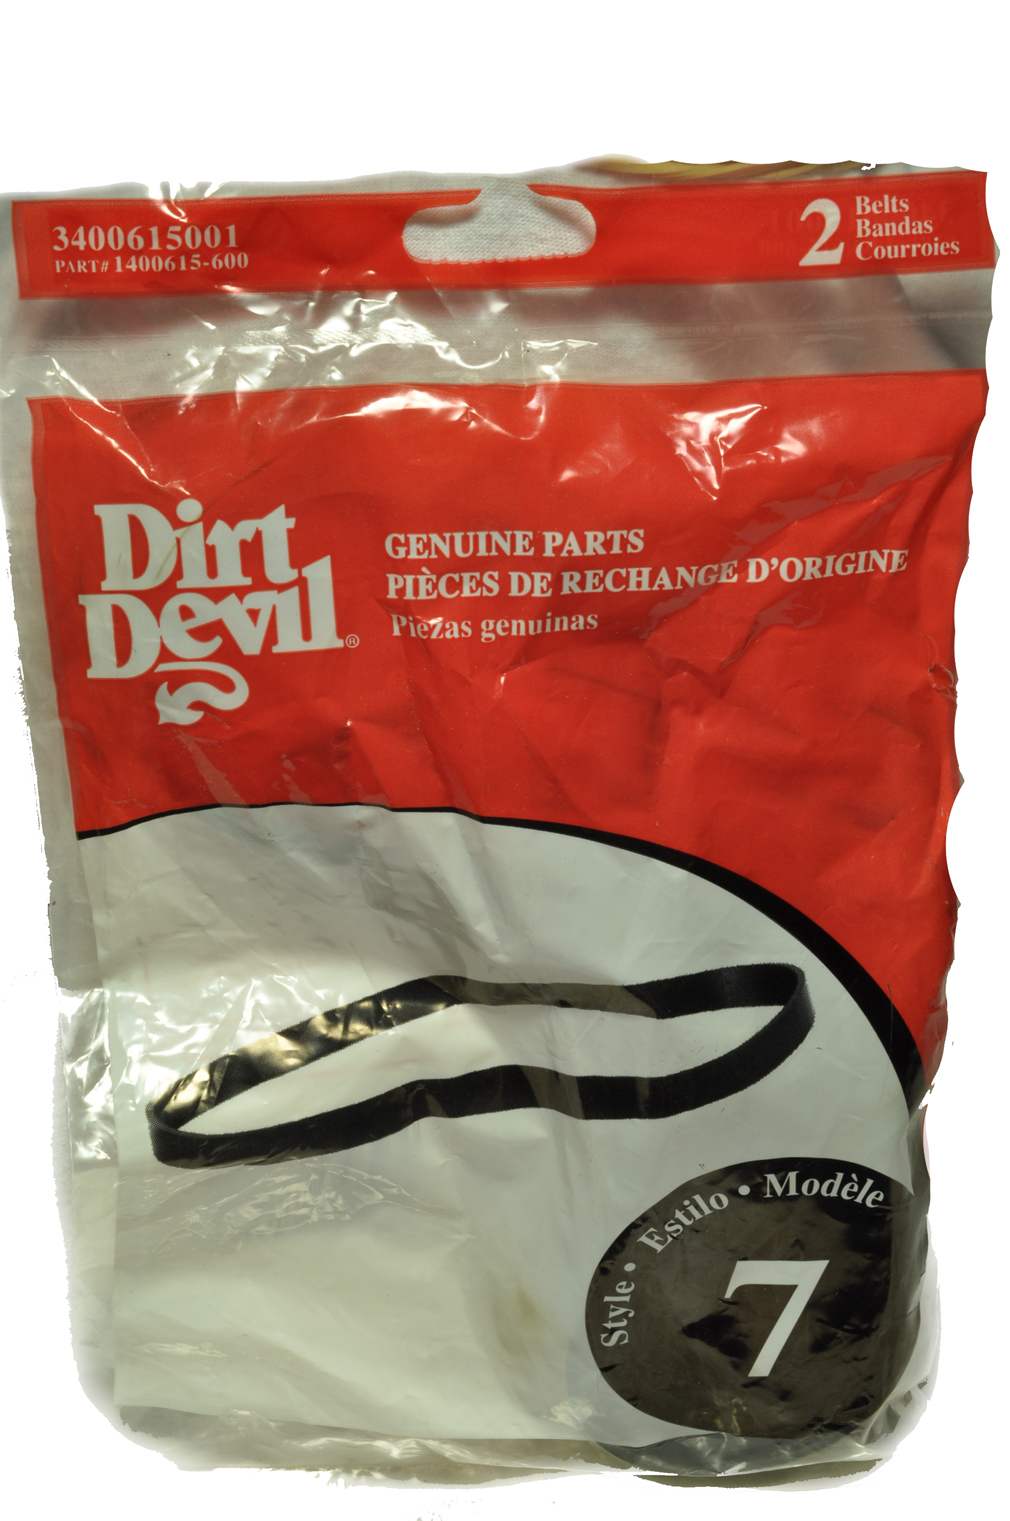 Dirt Devil Steam Vac Belt, Belt Style Number 7, 2 belts in pack